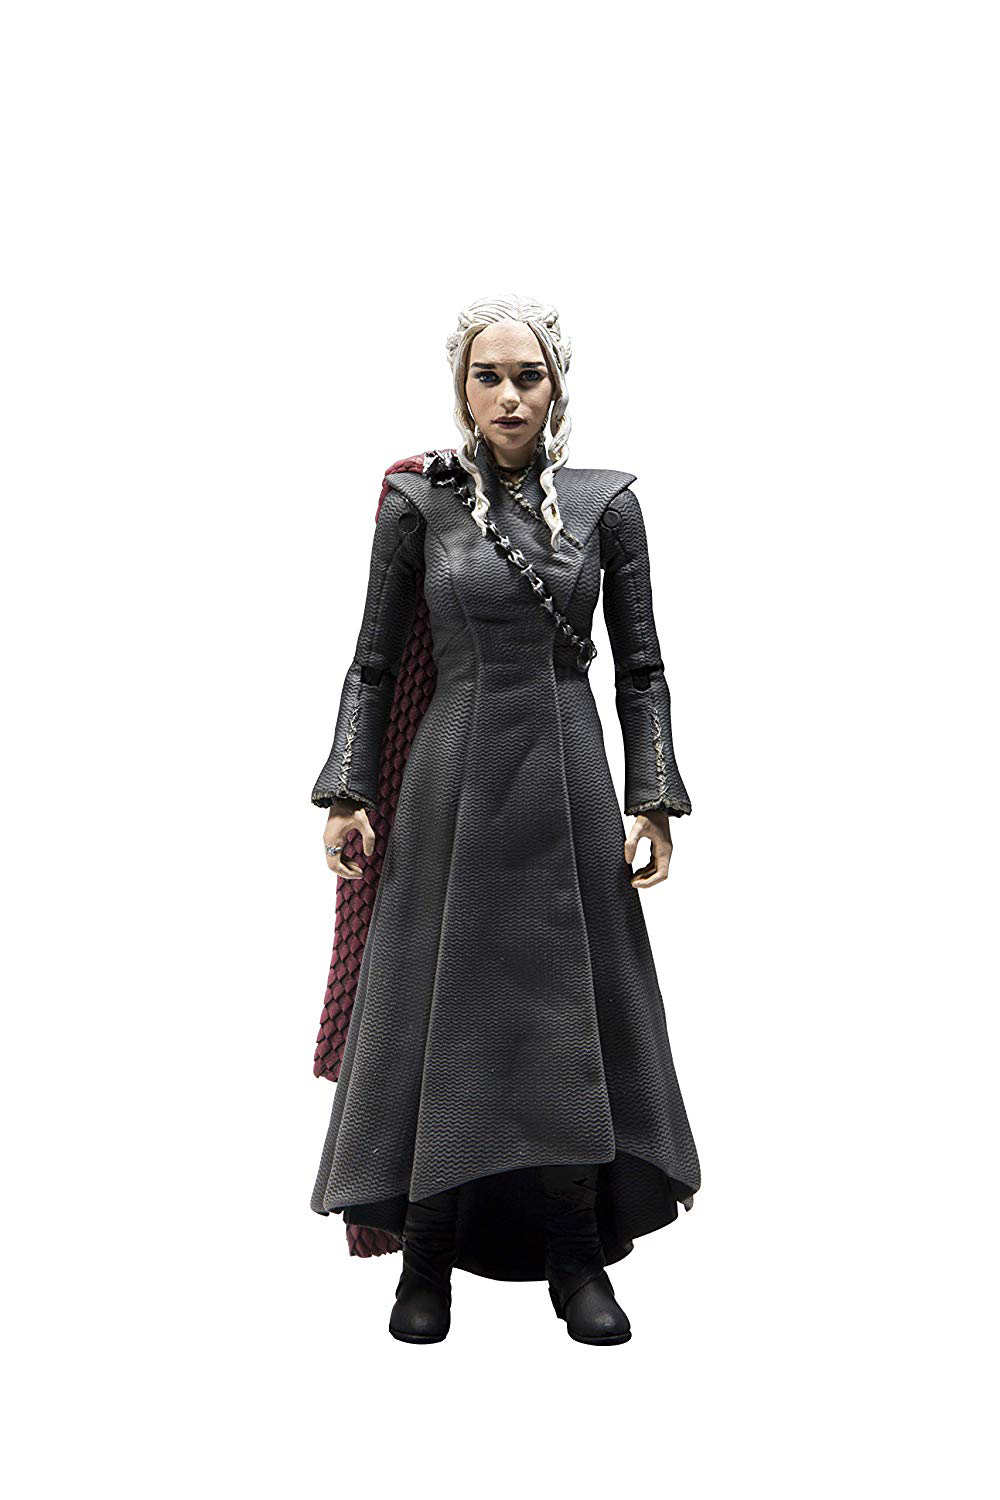 Daenerys Targaryen Figure (by McFarlane Toys 10652)